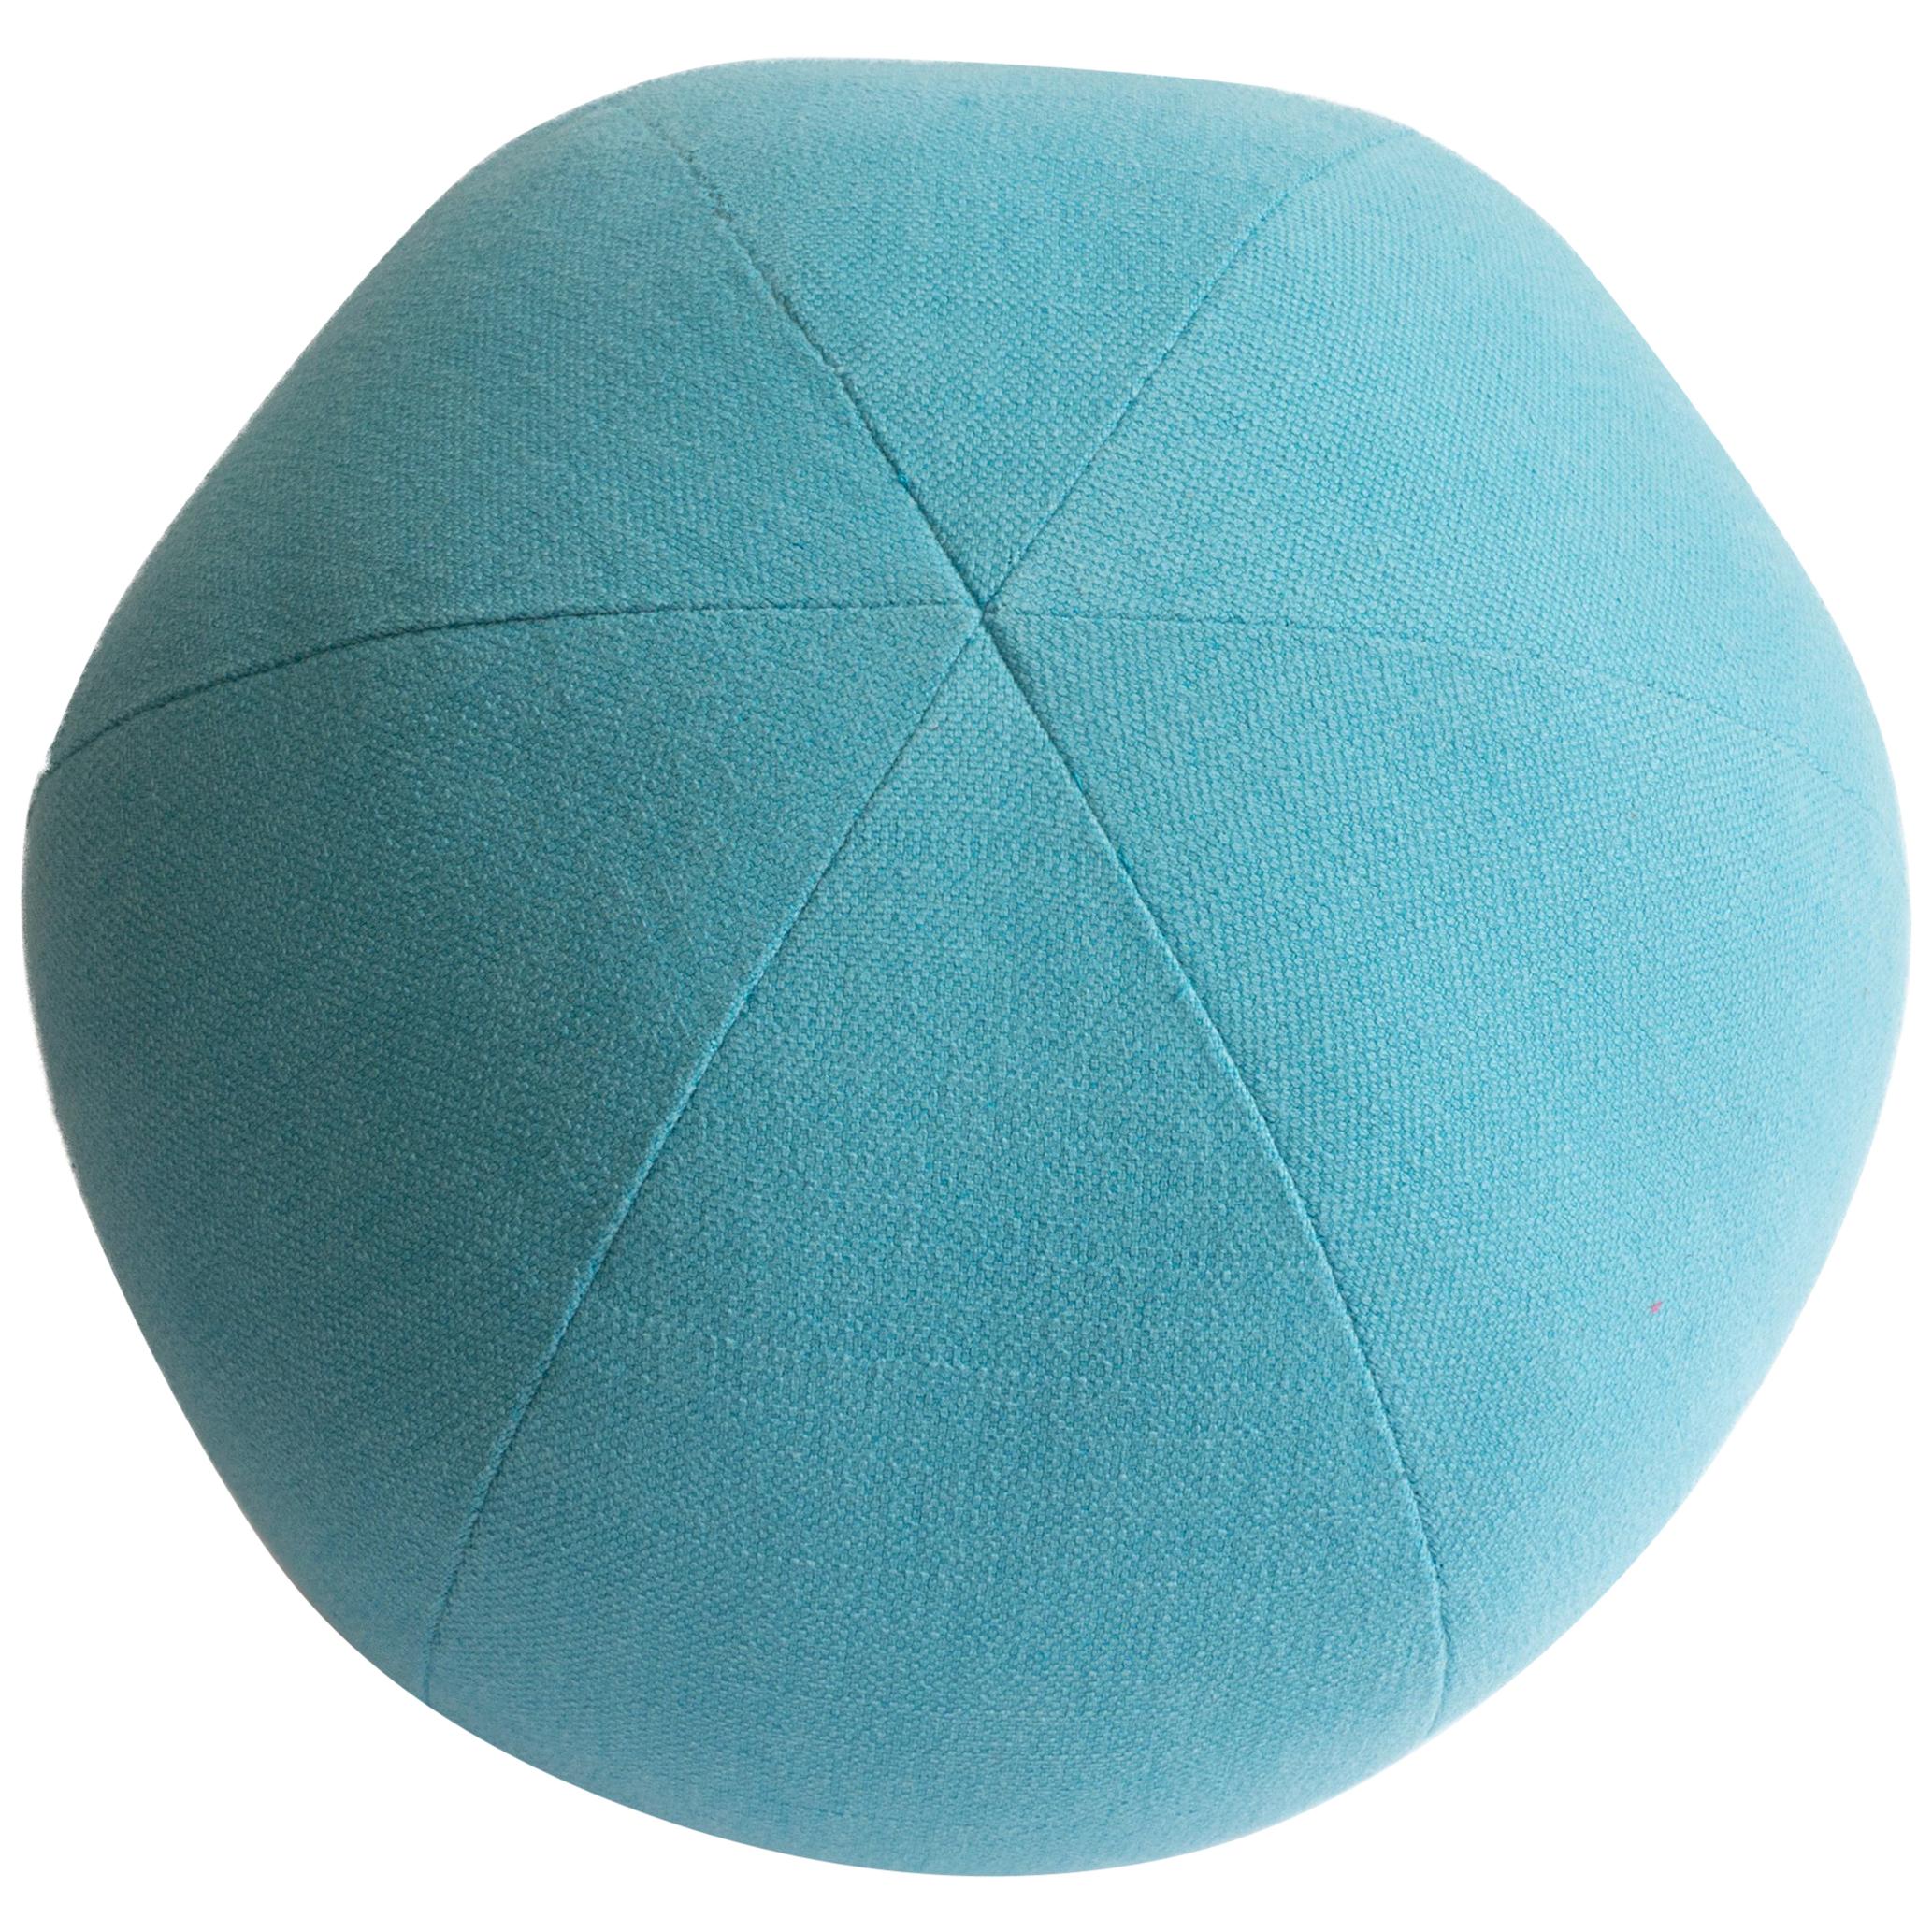 Light Blue Round Ball Throw Pillow